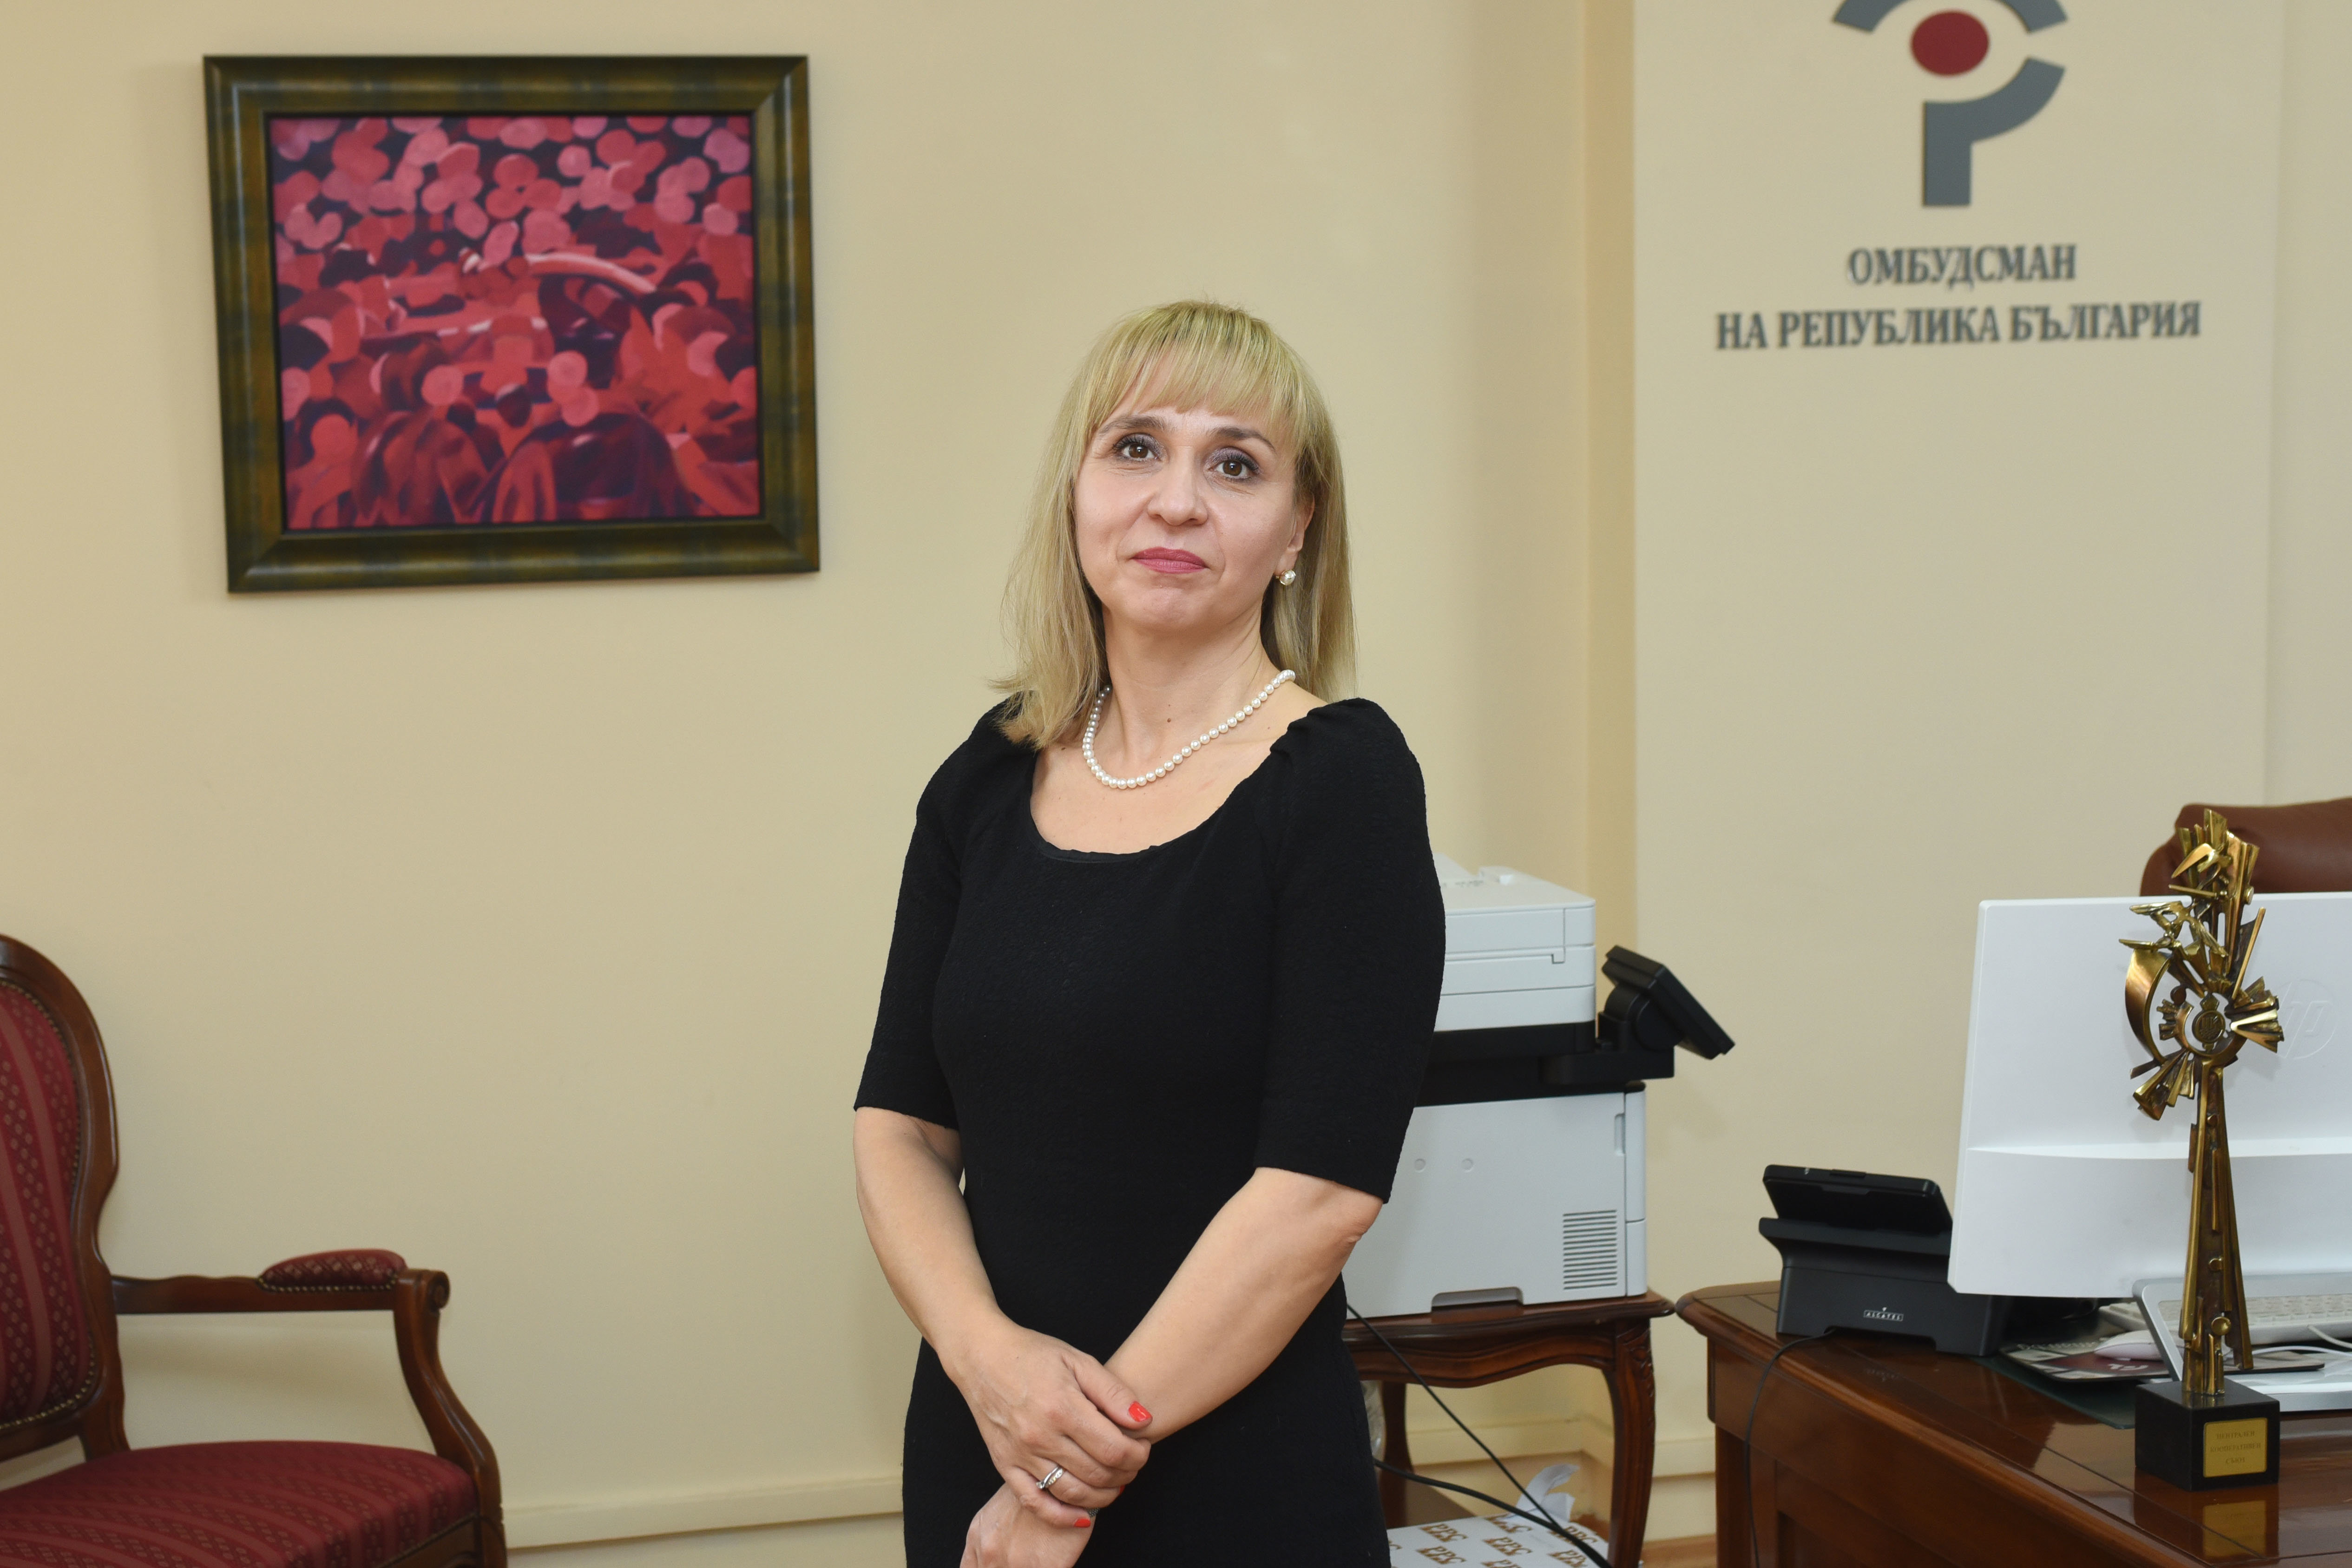 Омбудсманът Диана Ковачева изпрати поредна препоръка до председателя на Асоциацията